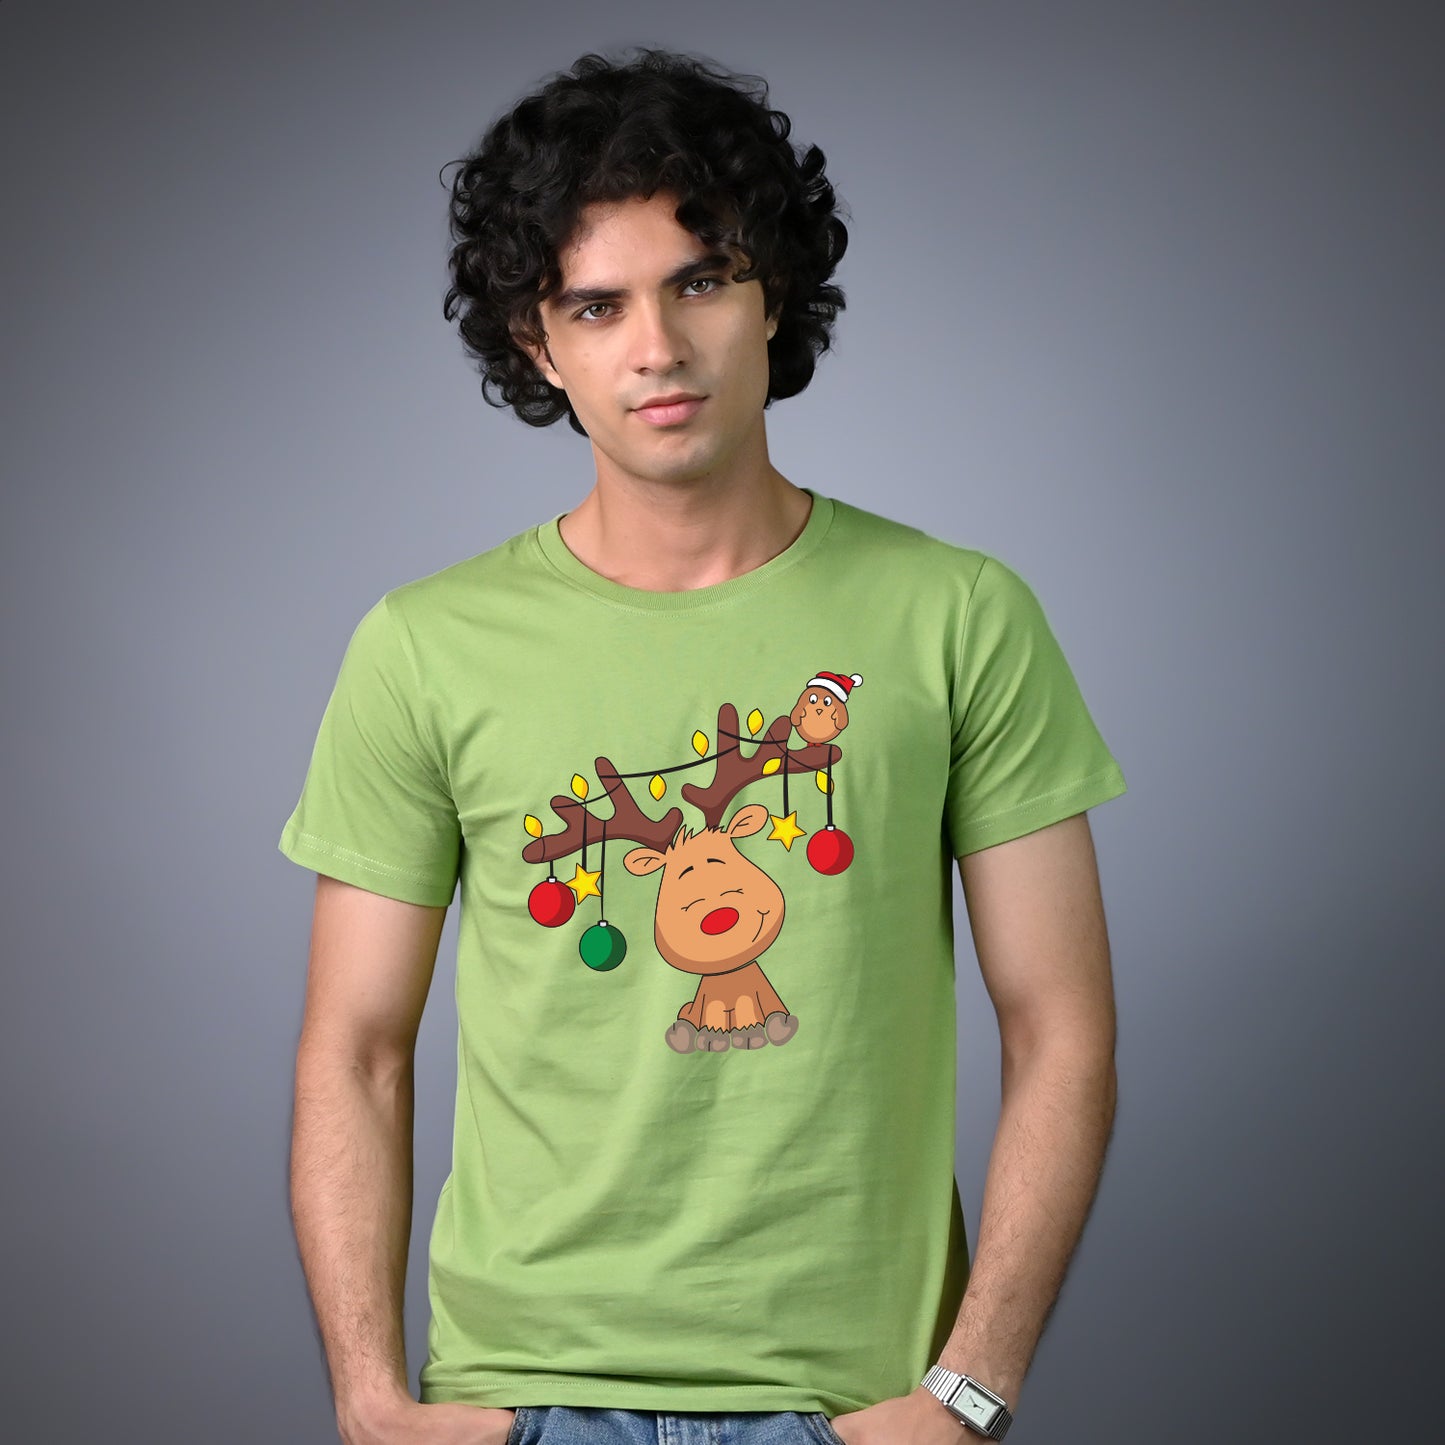 Christmas Reindeer on T-shirt